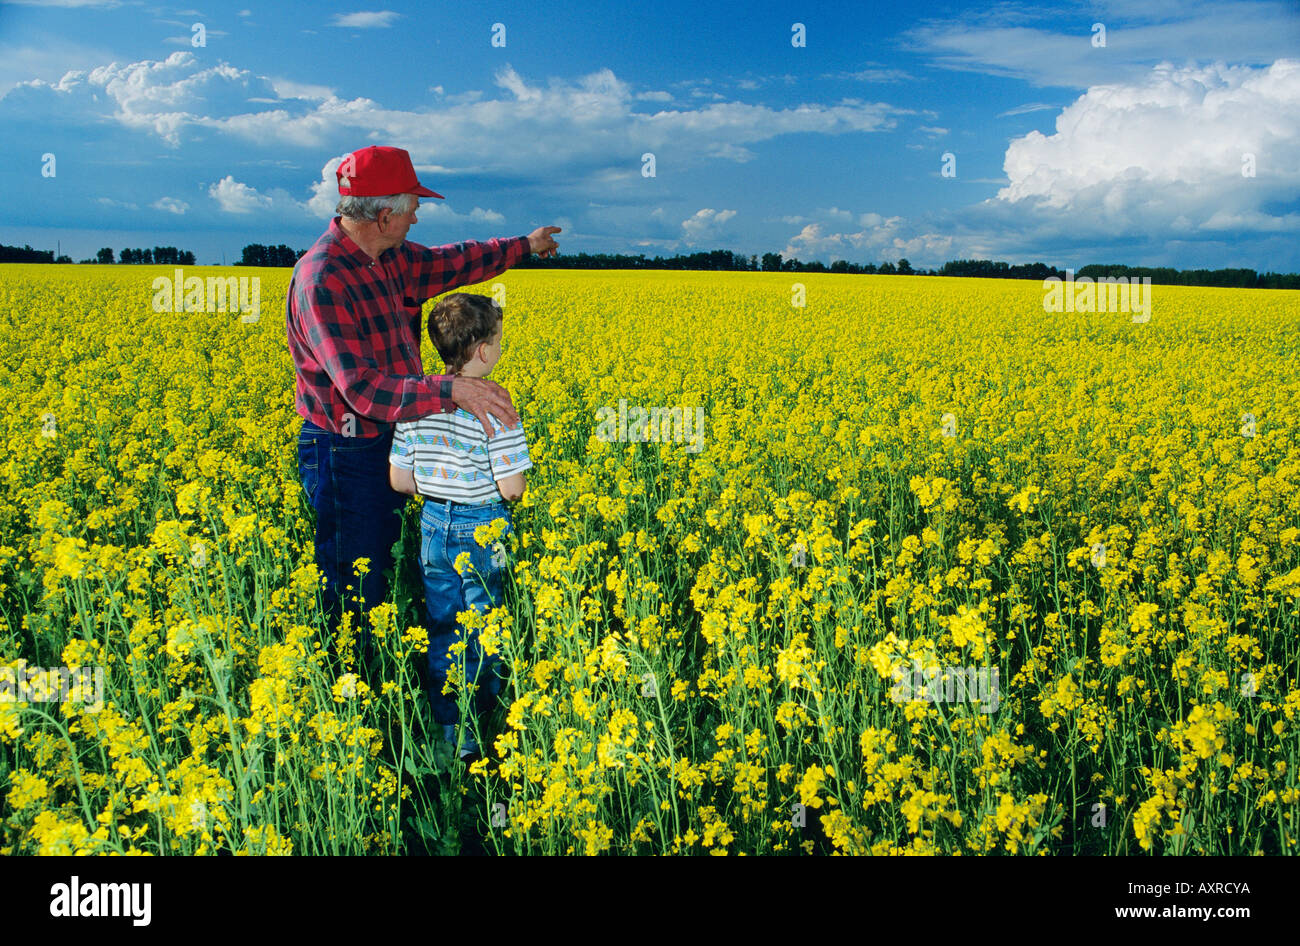 Farmer in a Canola field, Alberta, Canada Stock Photo